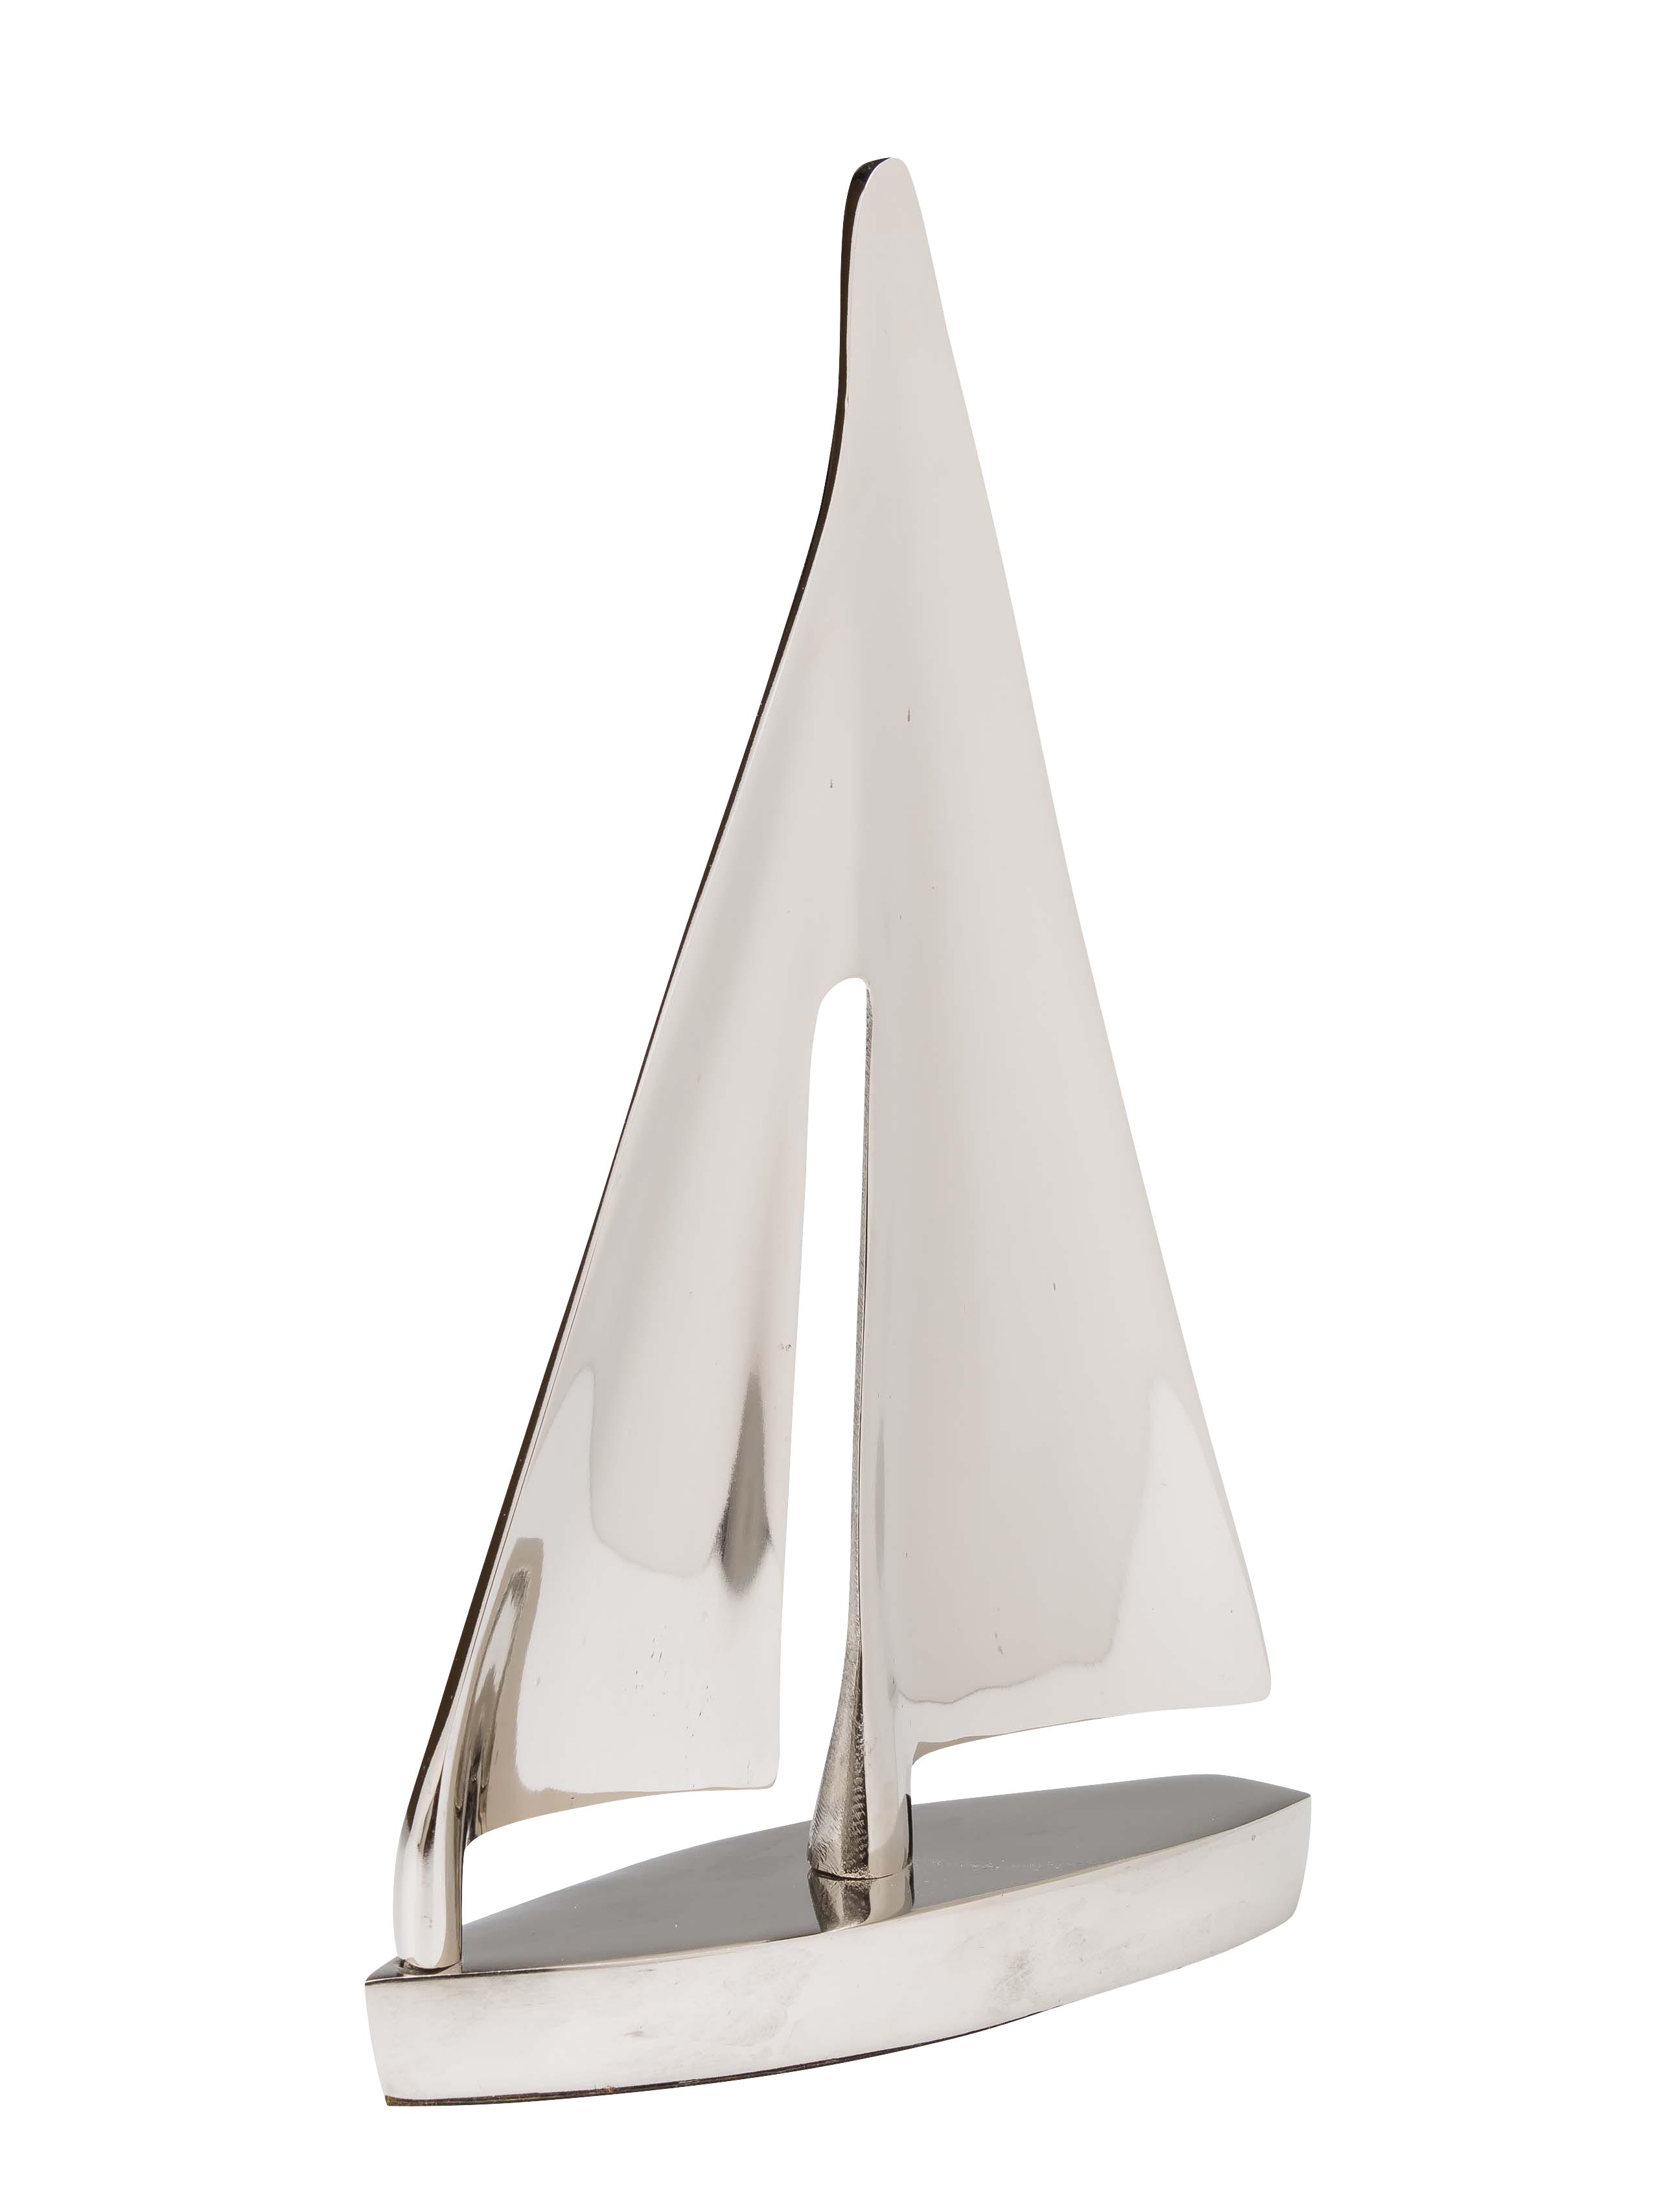 Segelschiff Schiff Modell Aluminium silber Schreibtisch Deko Antik-Stil 